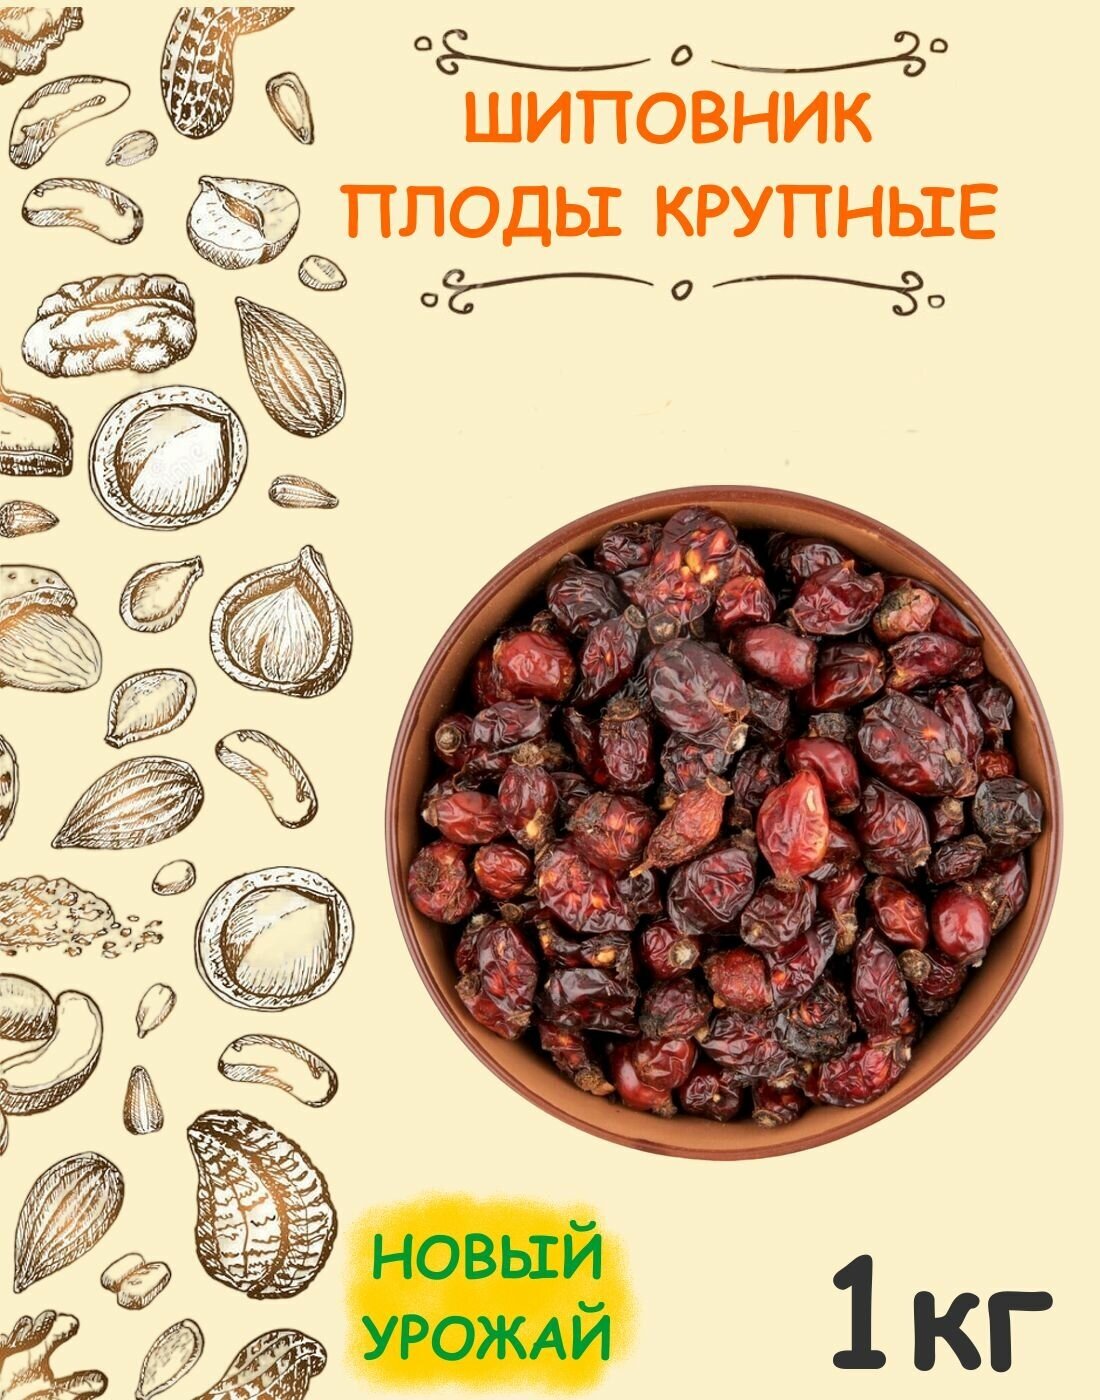 Шиповник сушеный плоды крупные Экстра Таджикистан 1 кг / 1000 г